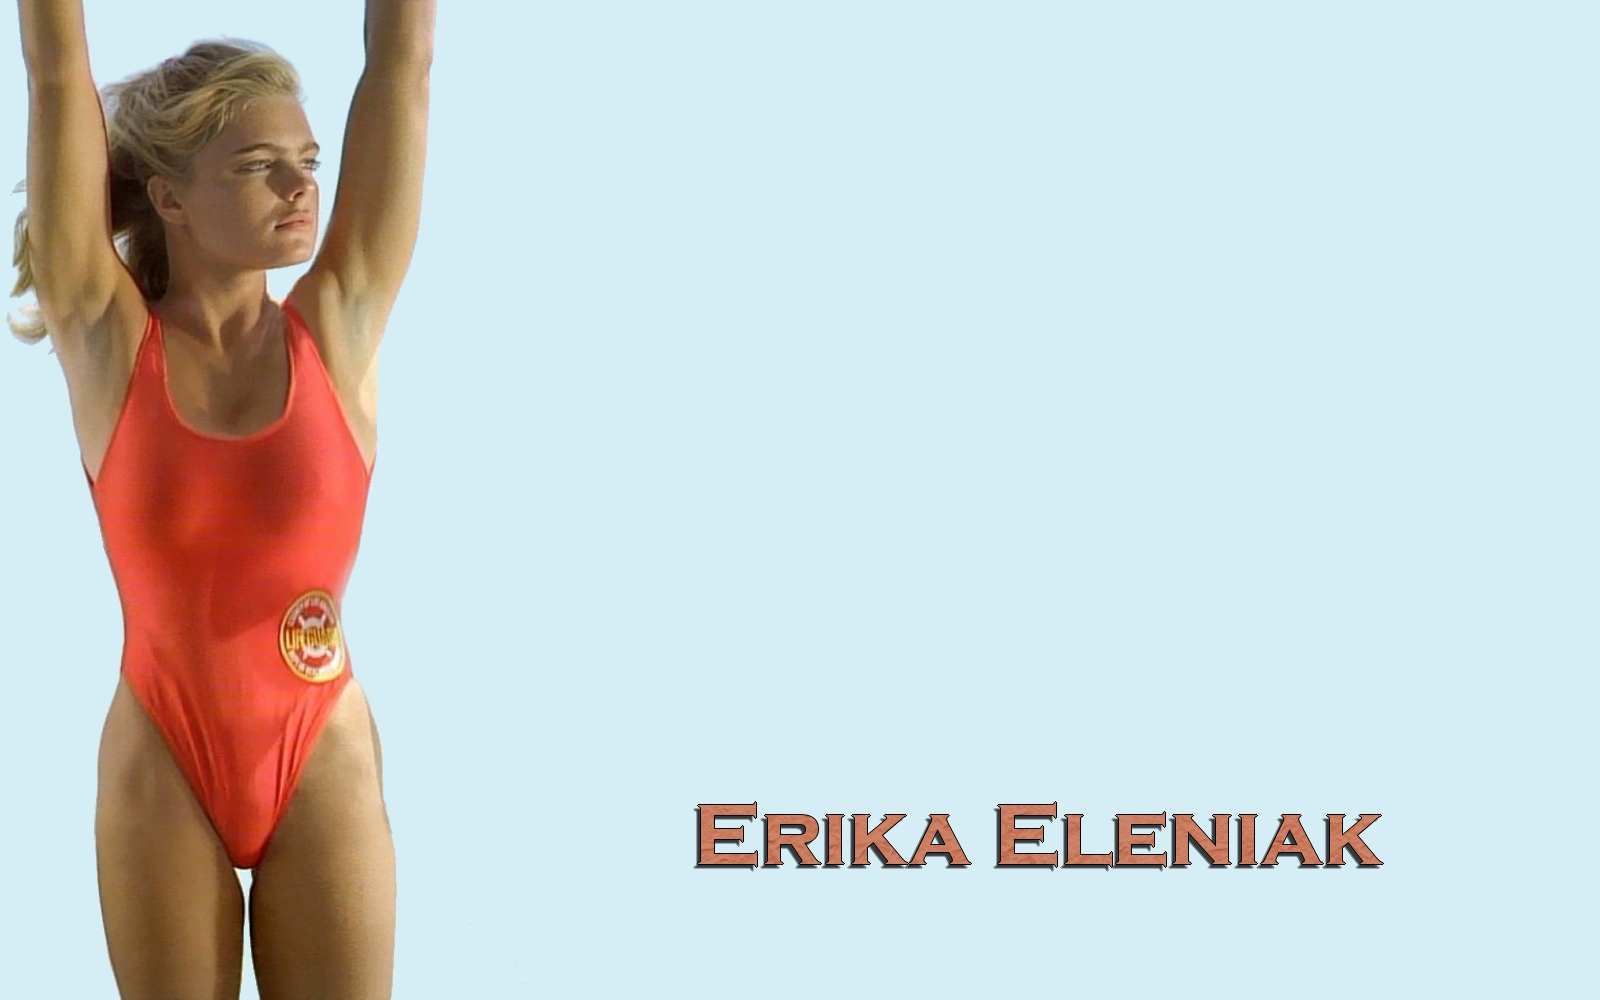 Erika Eleniak